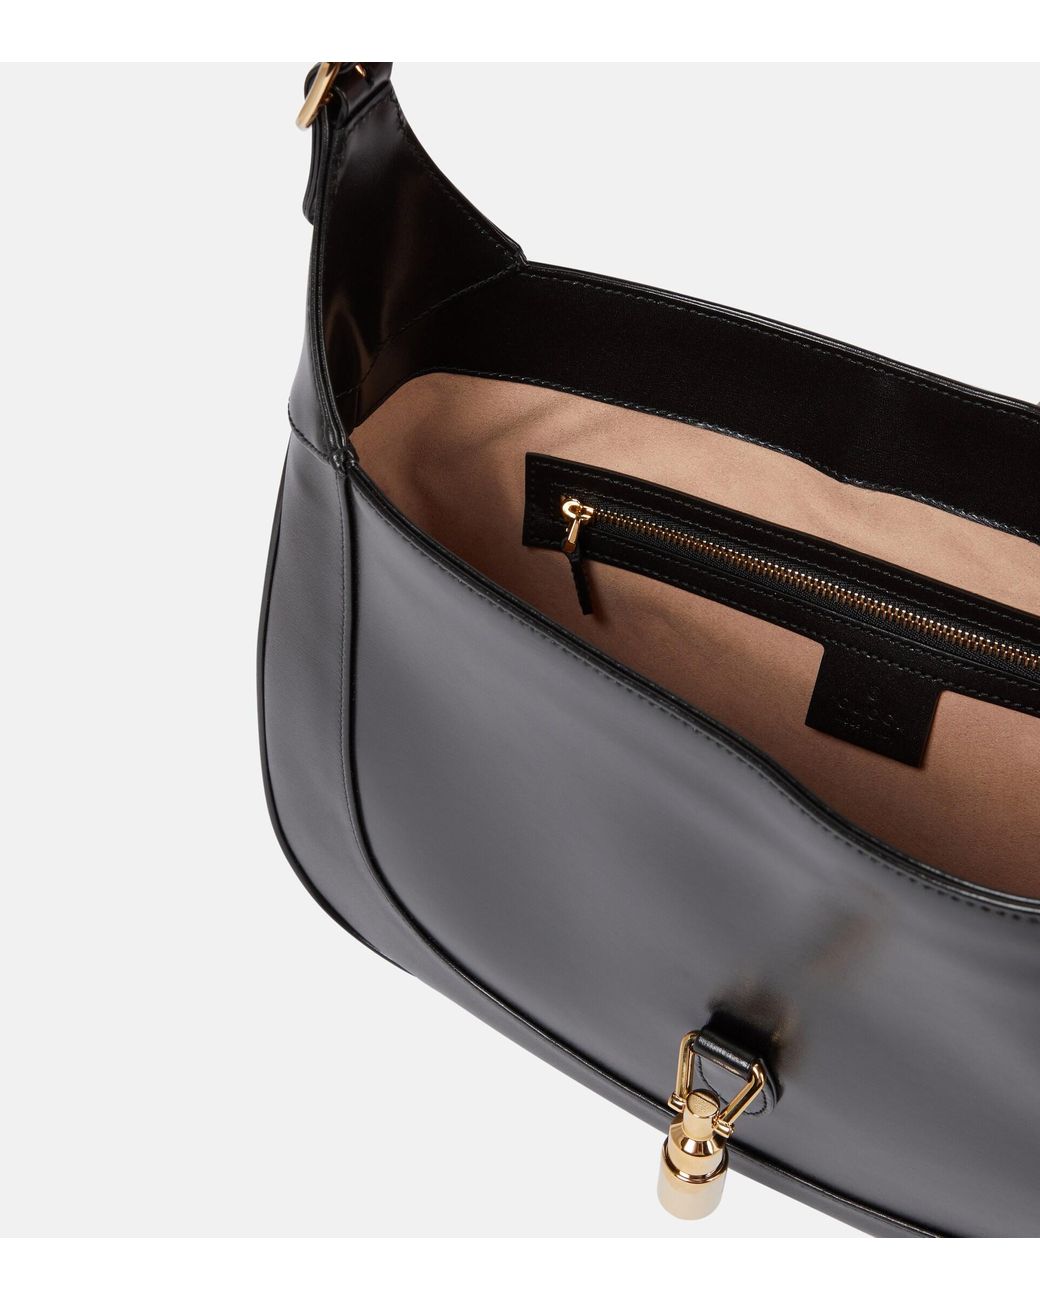 Jackie 1961 Medium Leather Shoulder Bag in Black - Gucci